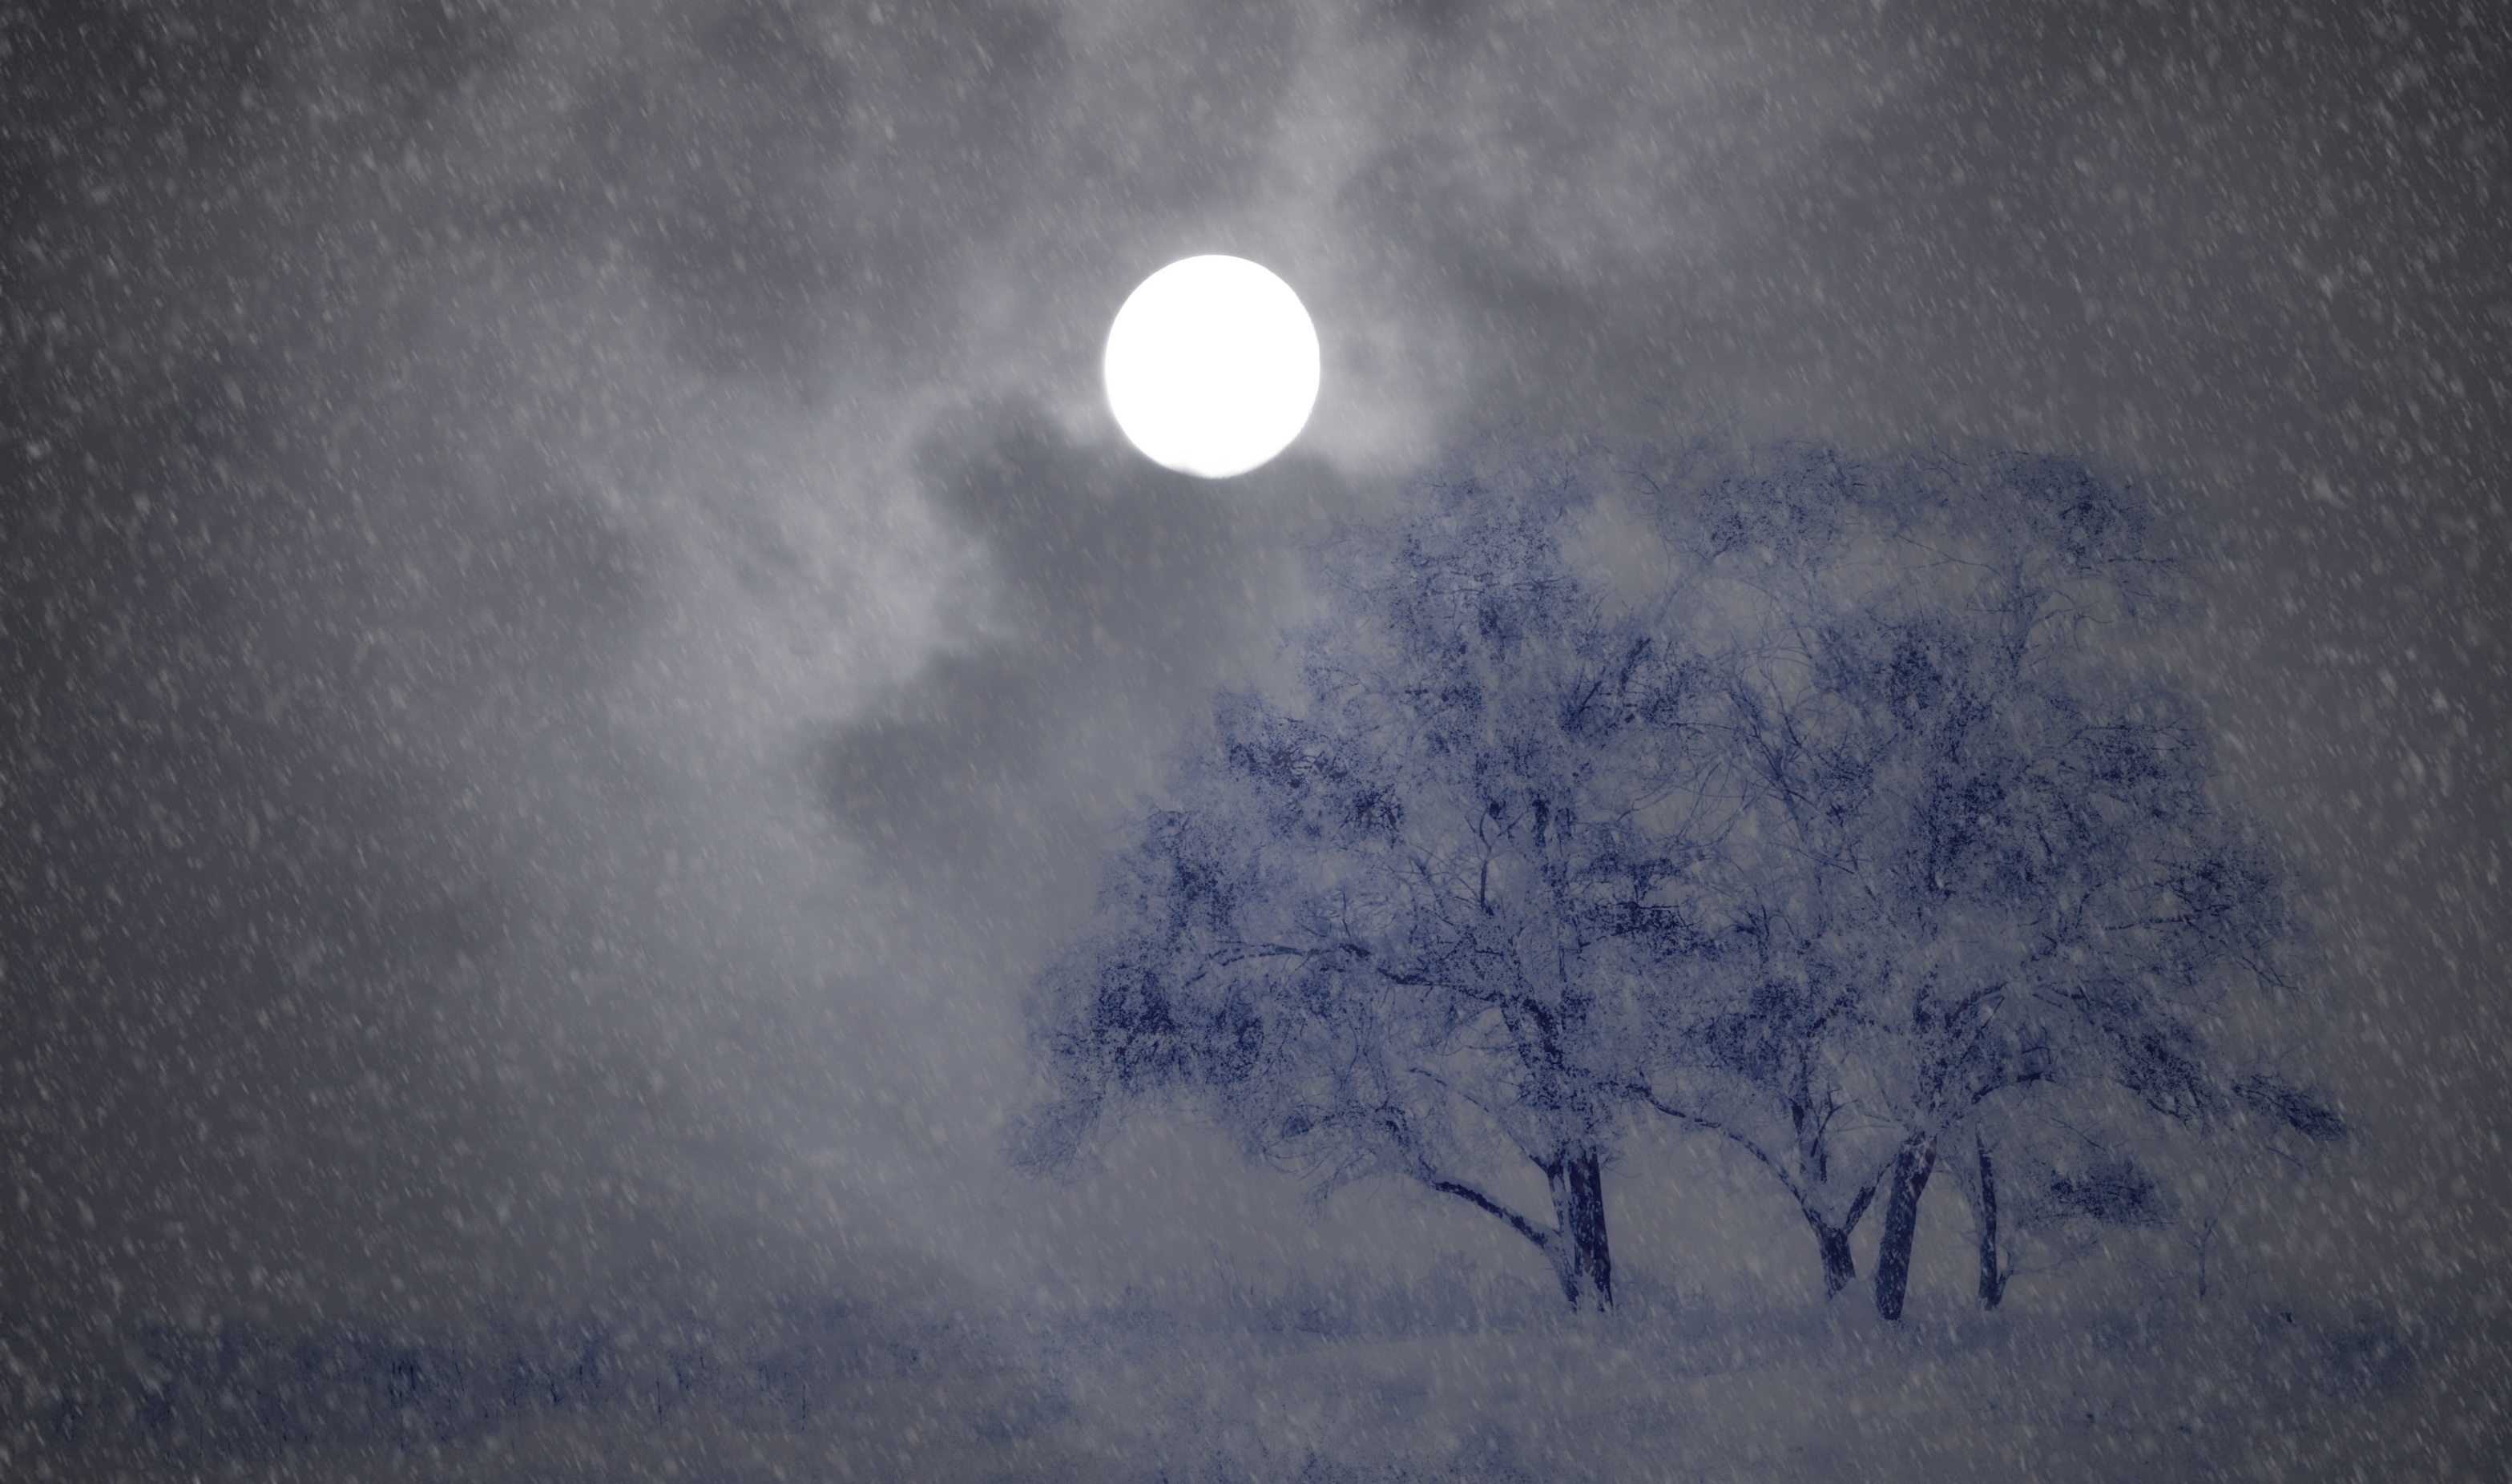 В воздухе стояла мгла небо из синего. Зимняя ночь. Ночная метель. Зимний ночной пейзаж. Вьюга ночью.